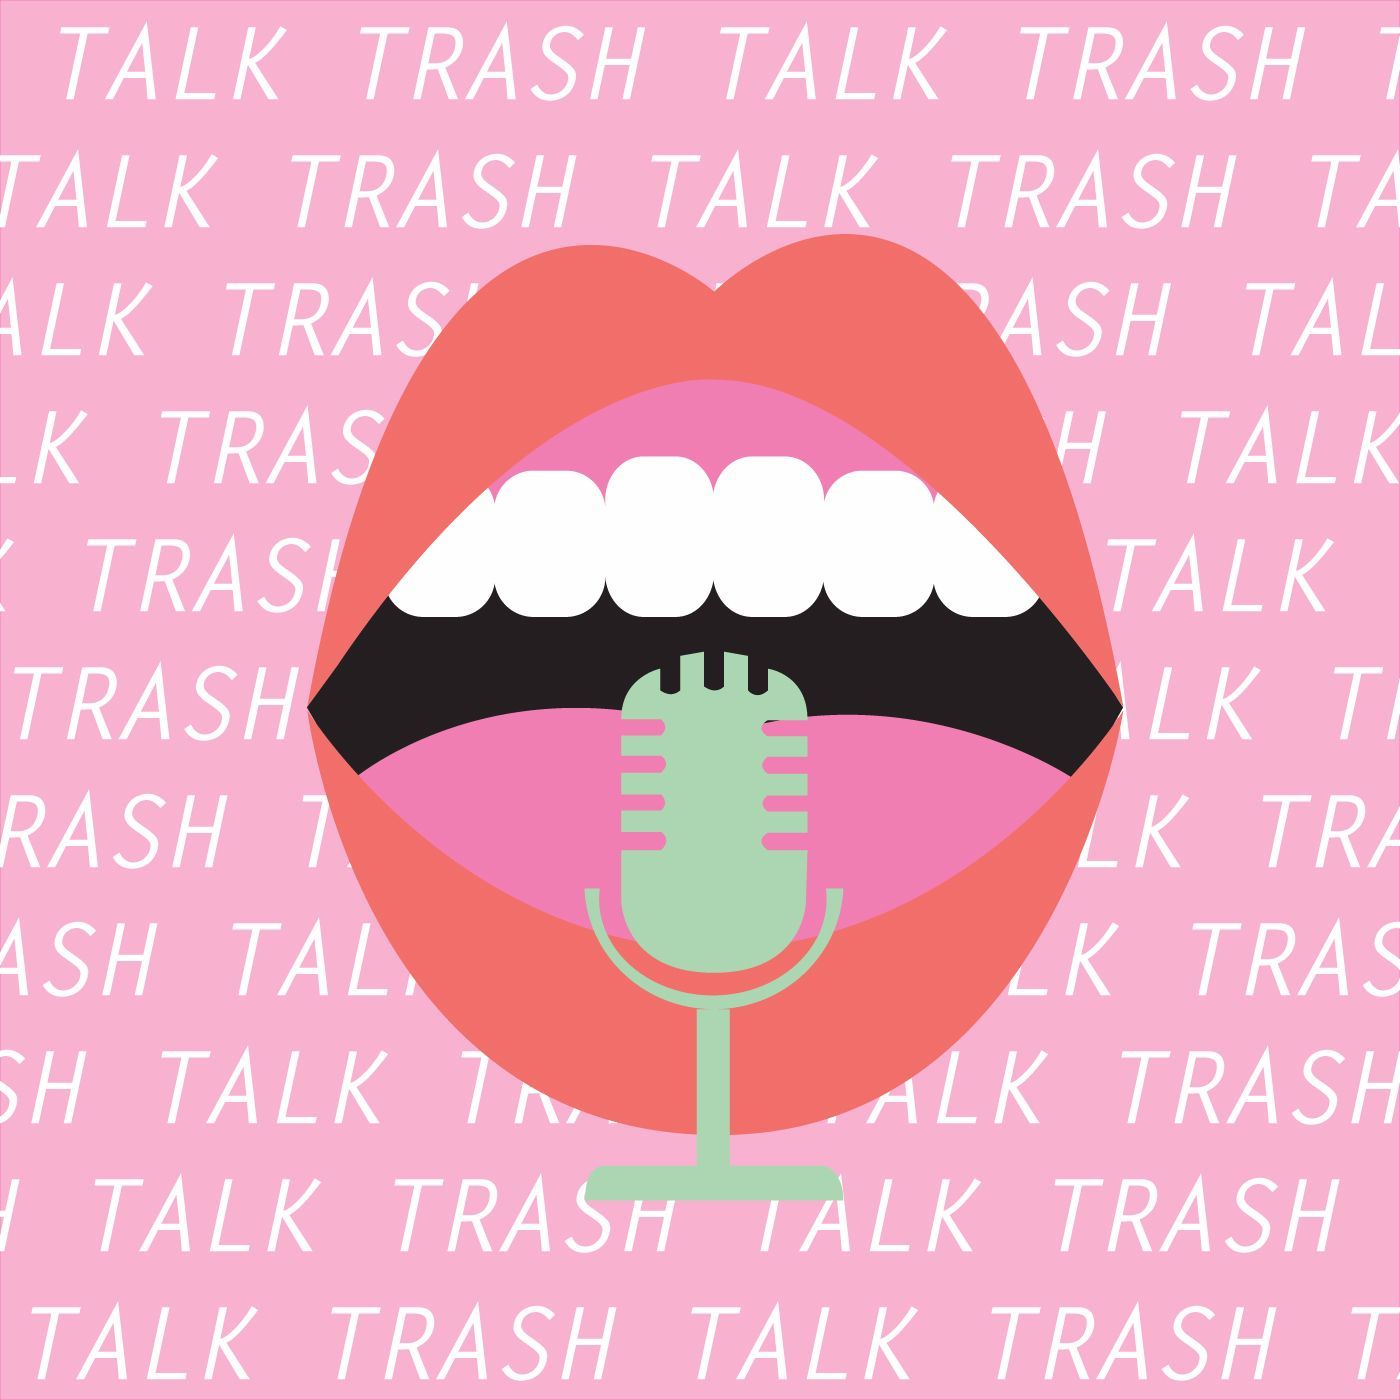 Trash Talk - Apple Music